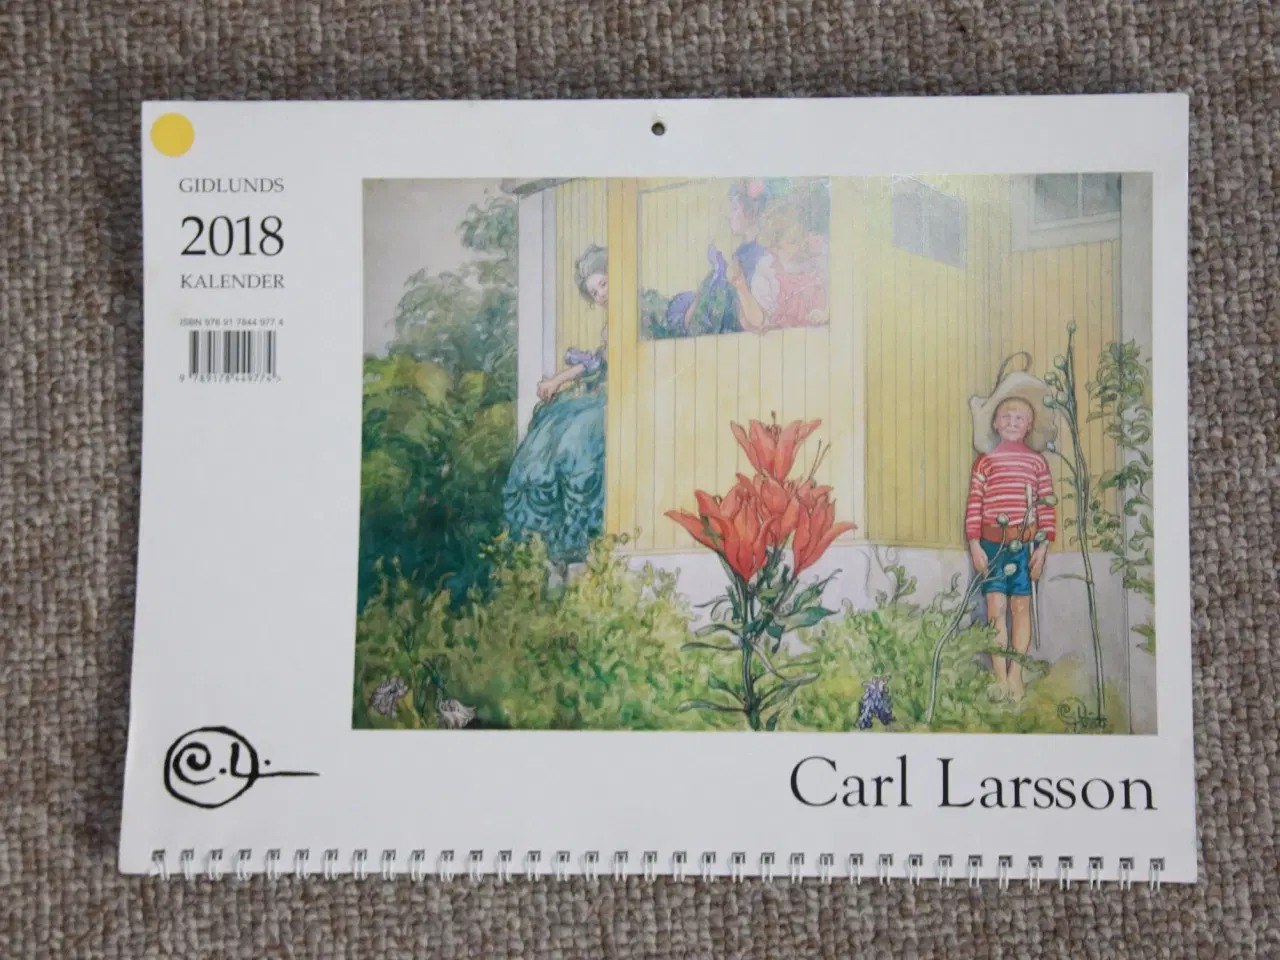 Billede 4 - Carls Larsson væg kalender 2014, 2016, 2018 Skagen